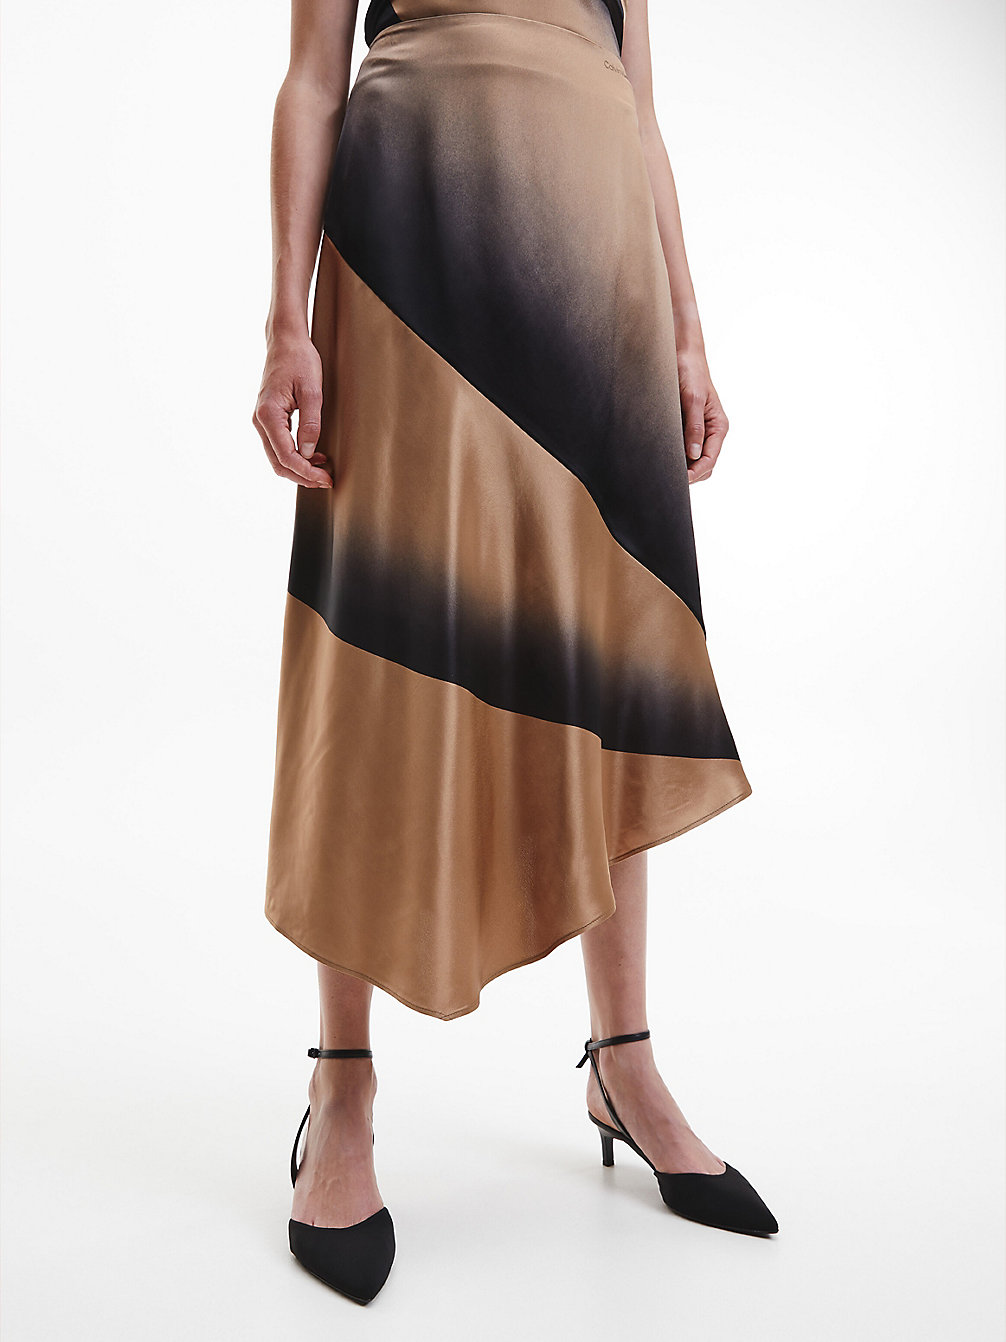 ARCHITECTURAL SPRAY / SAFARI CANVAS Jupe Asymétrique Avec Imprimé Ombre undefined femmes Calvin Klein